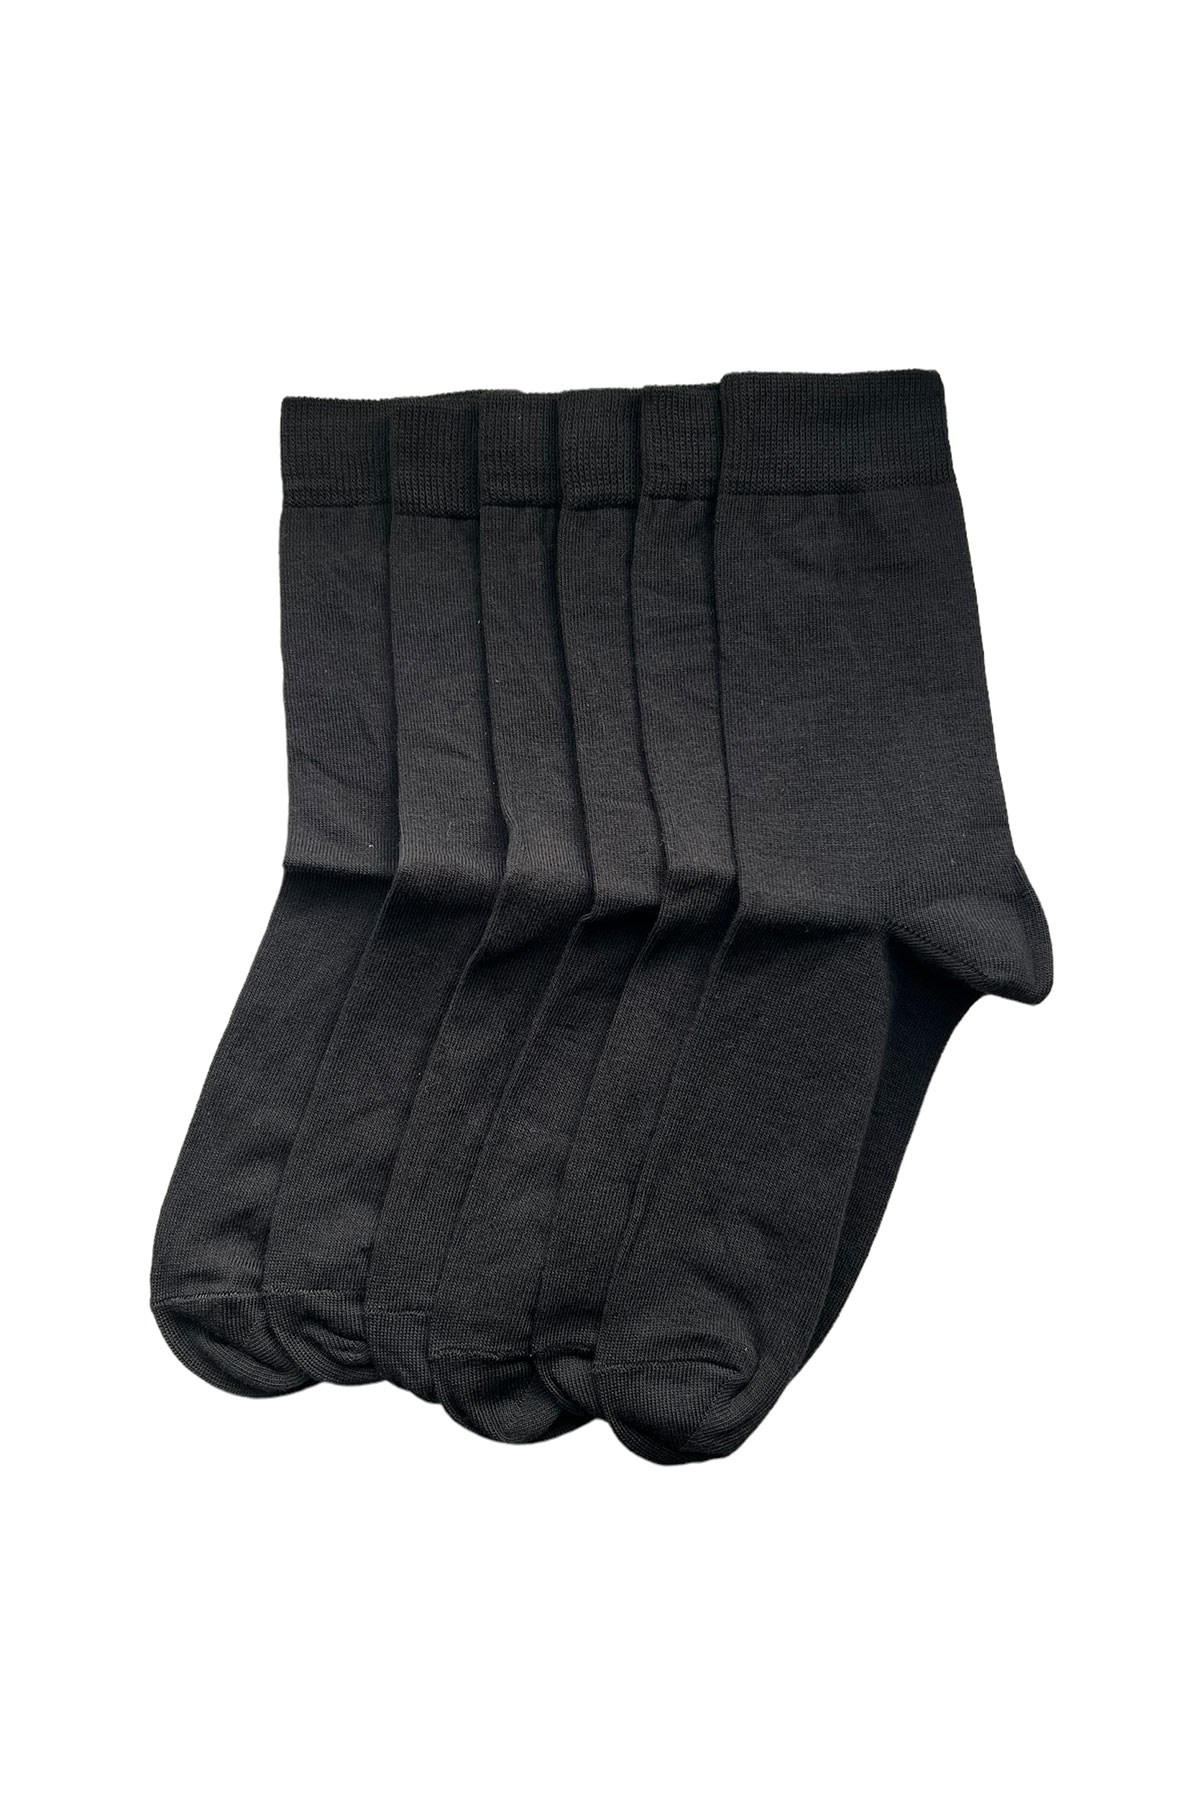 Katia and Bony 6'lı Paket Unisex Soket Çorap Desenli. 1